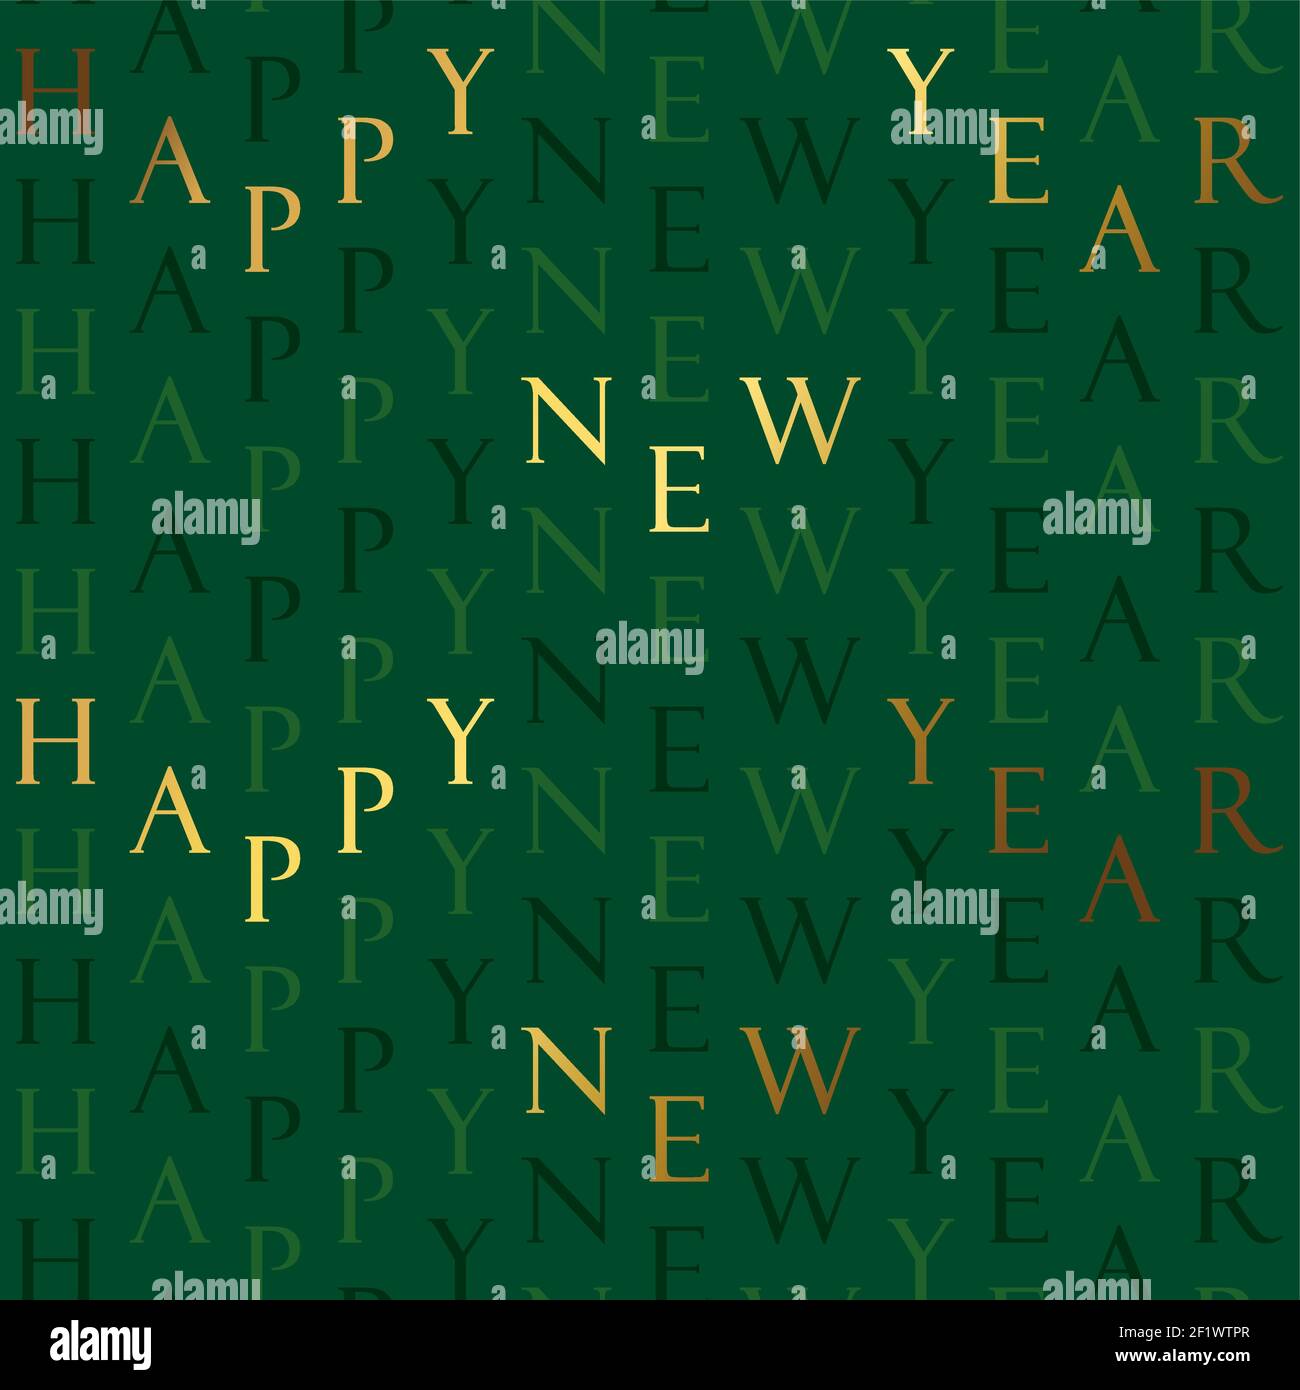 Happy New Year nahtlose Muster Illustration. Vintage Gold Luxus Text Zitat auf grünem Hintergrund für elegante Party-Event oder Saison Grüße. Golden Stock Vektor